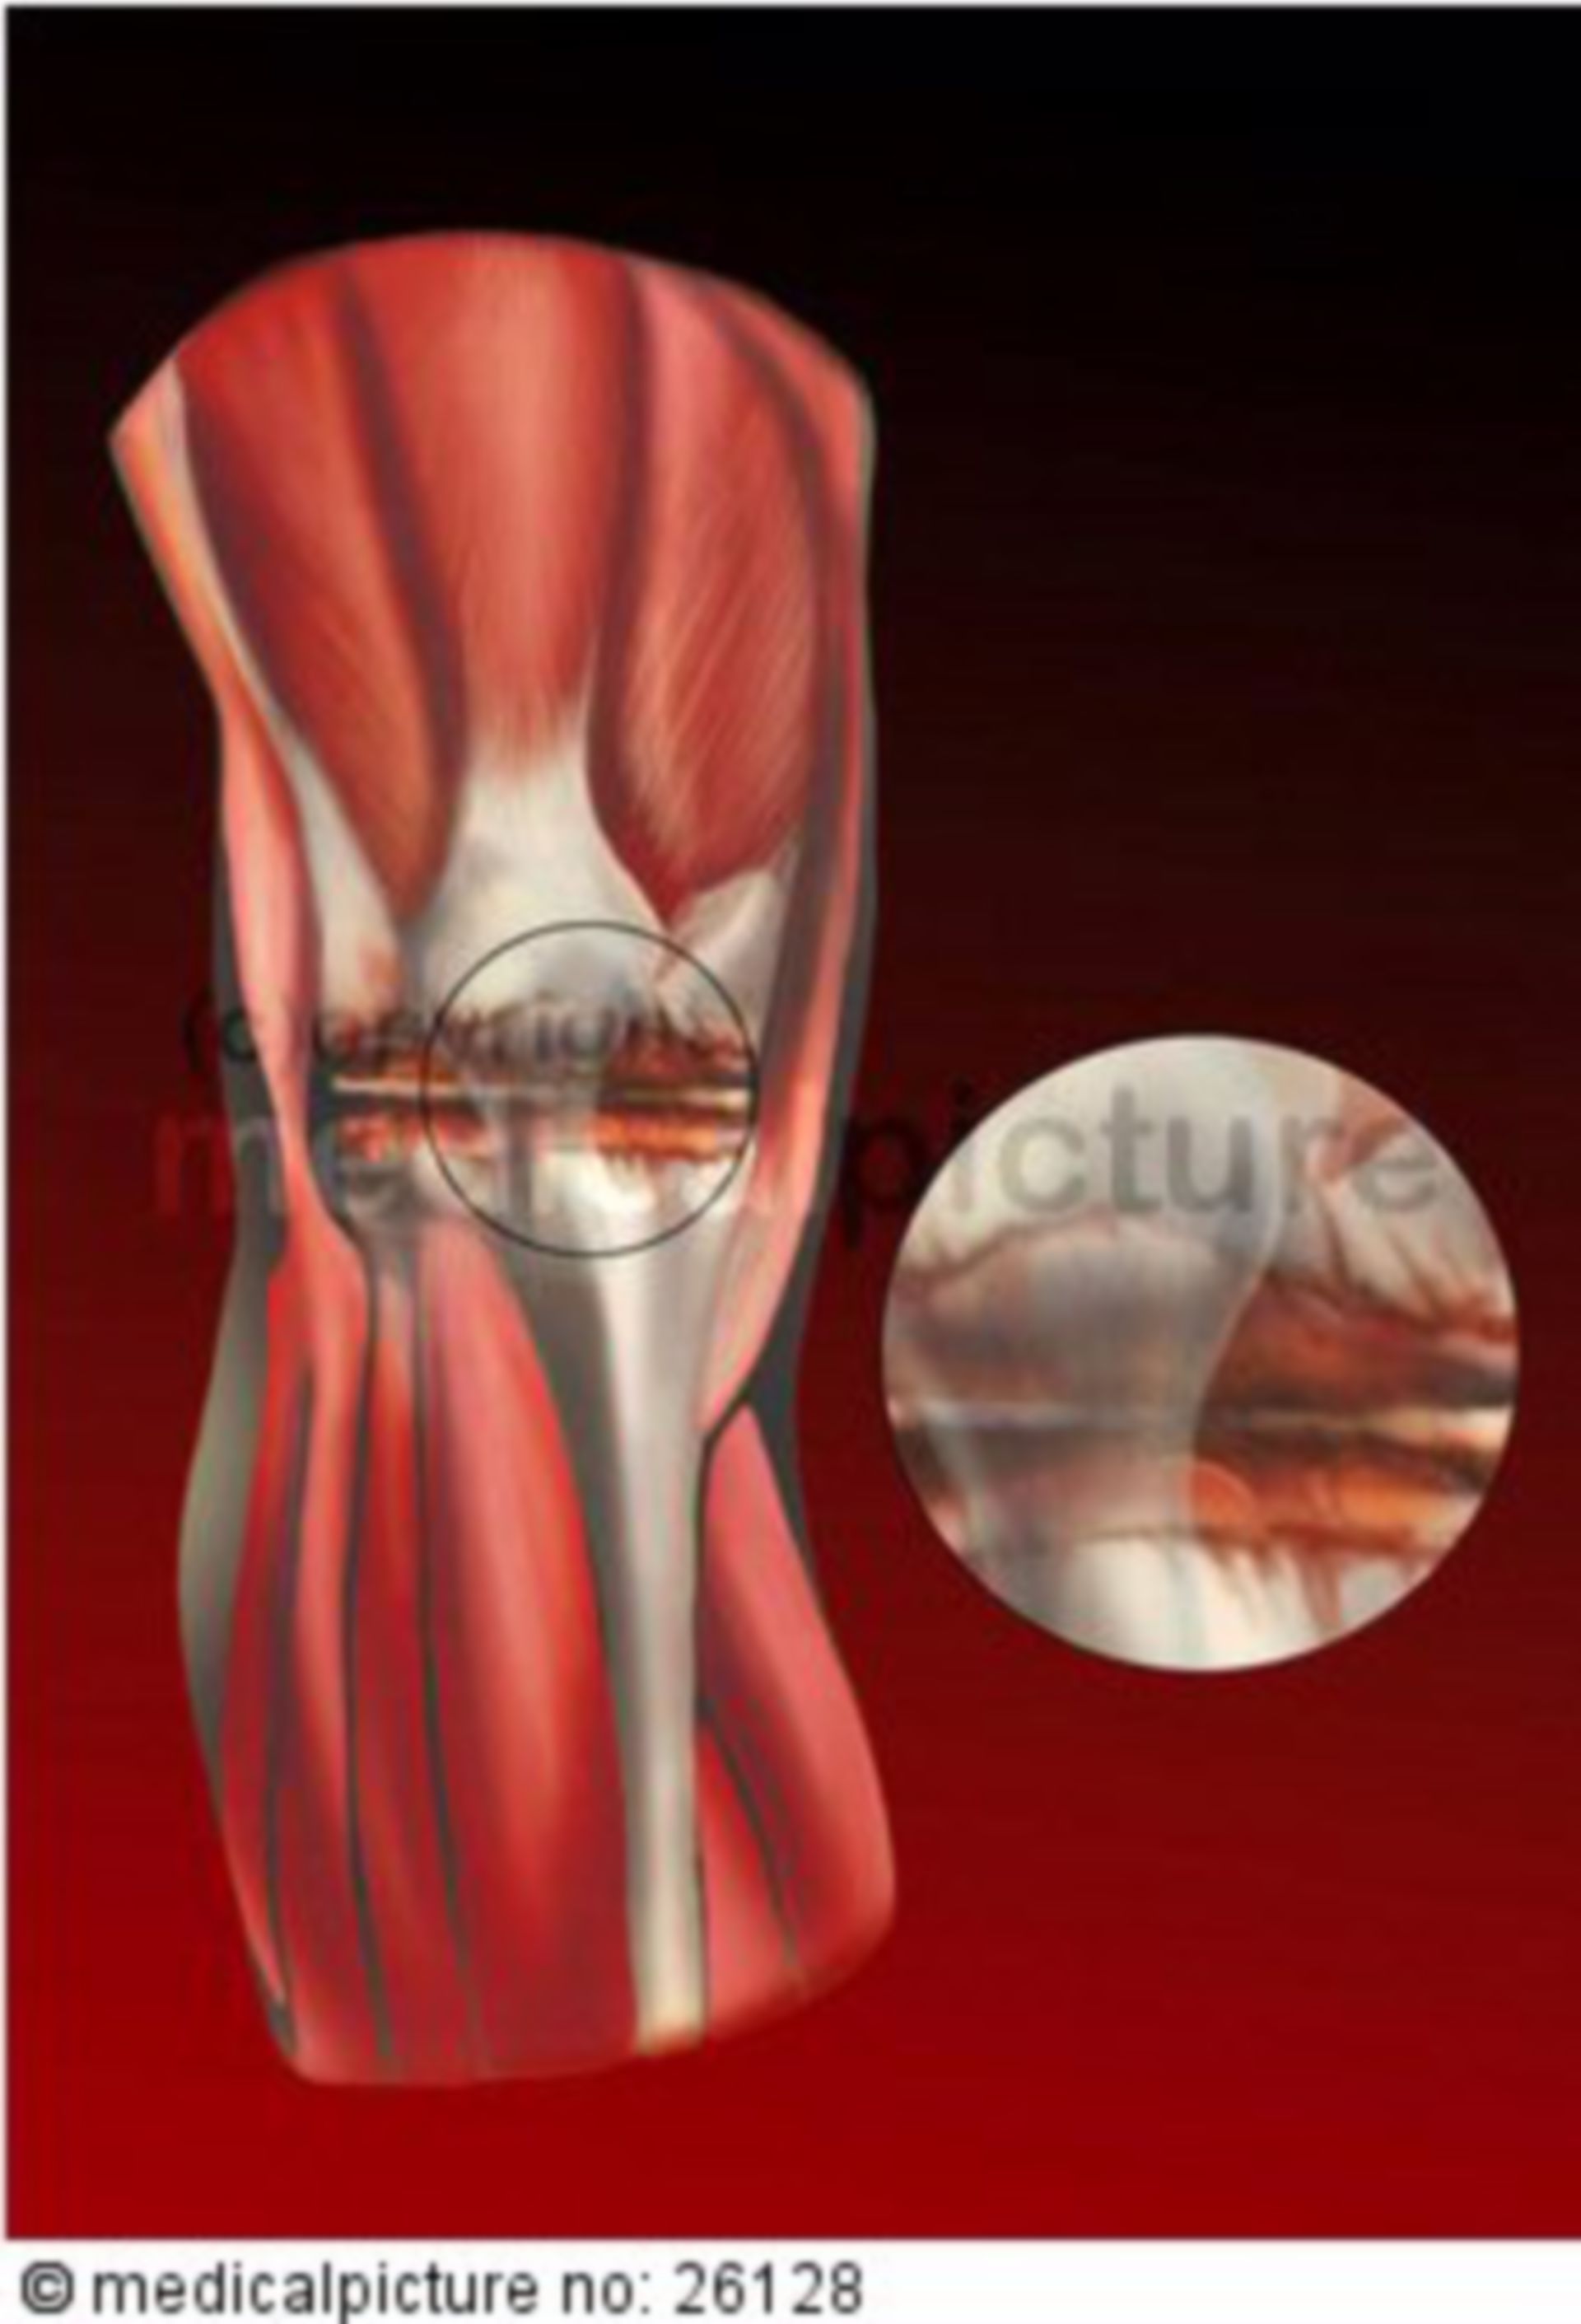 Arthritis of knee joint